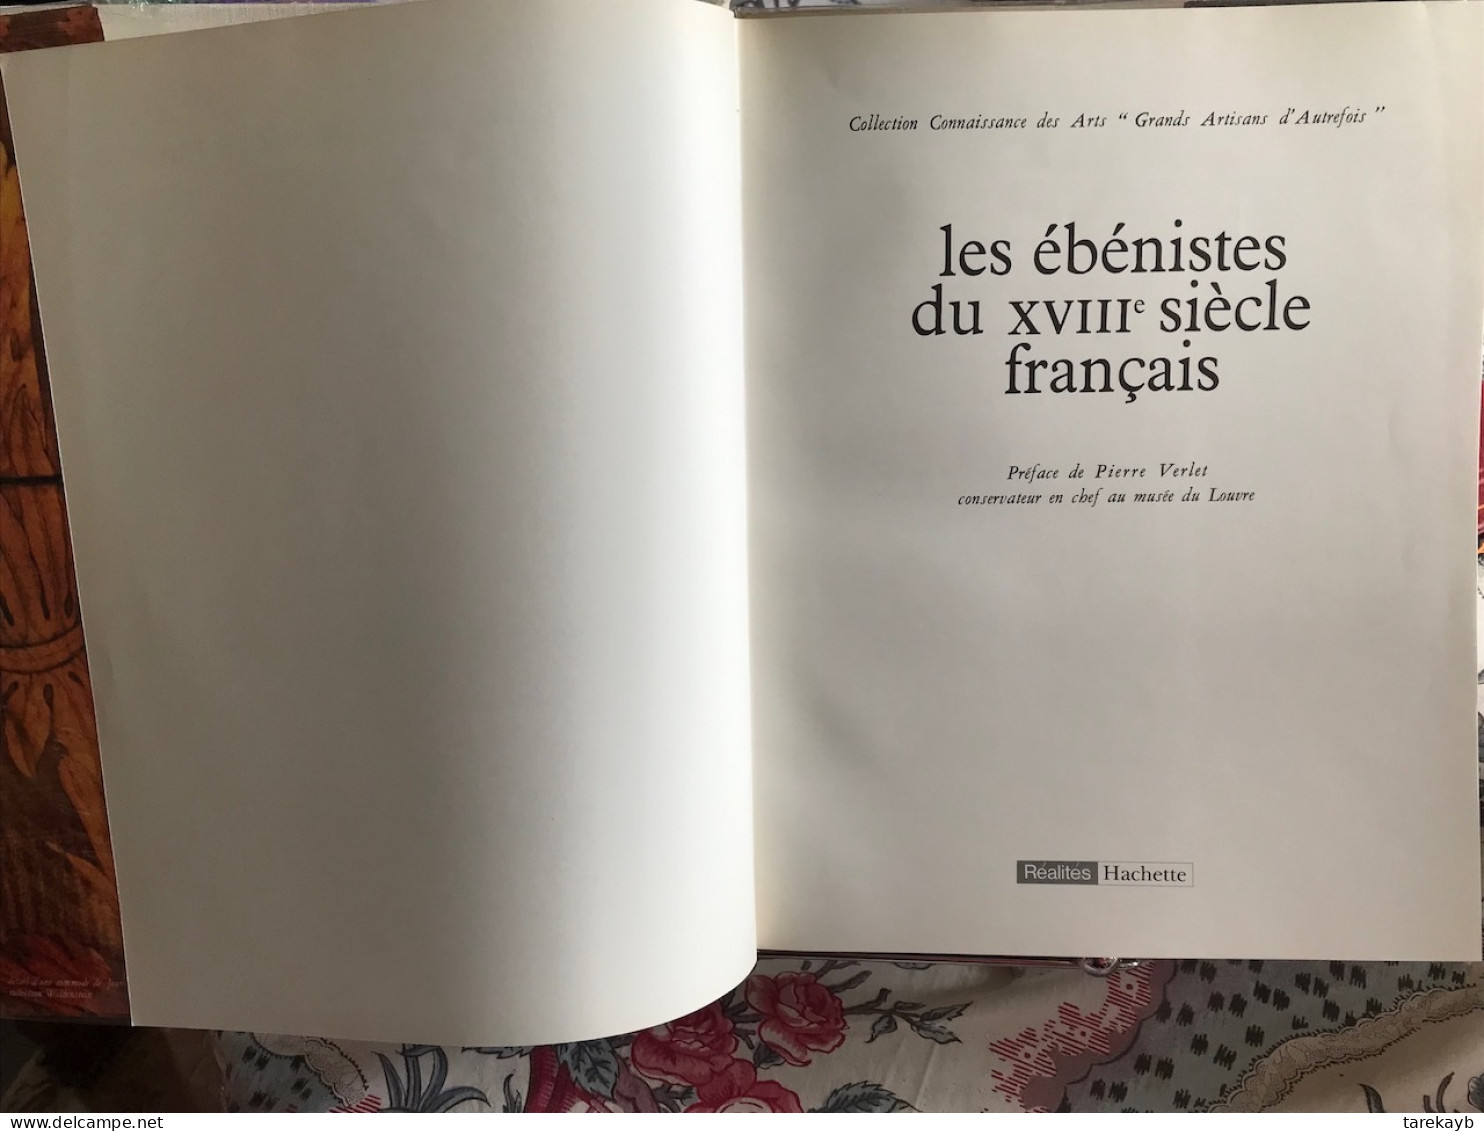 Les ébénistes du XVIII Siècle Français - Hachette (1963/1971)